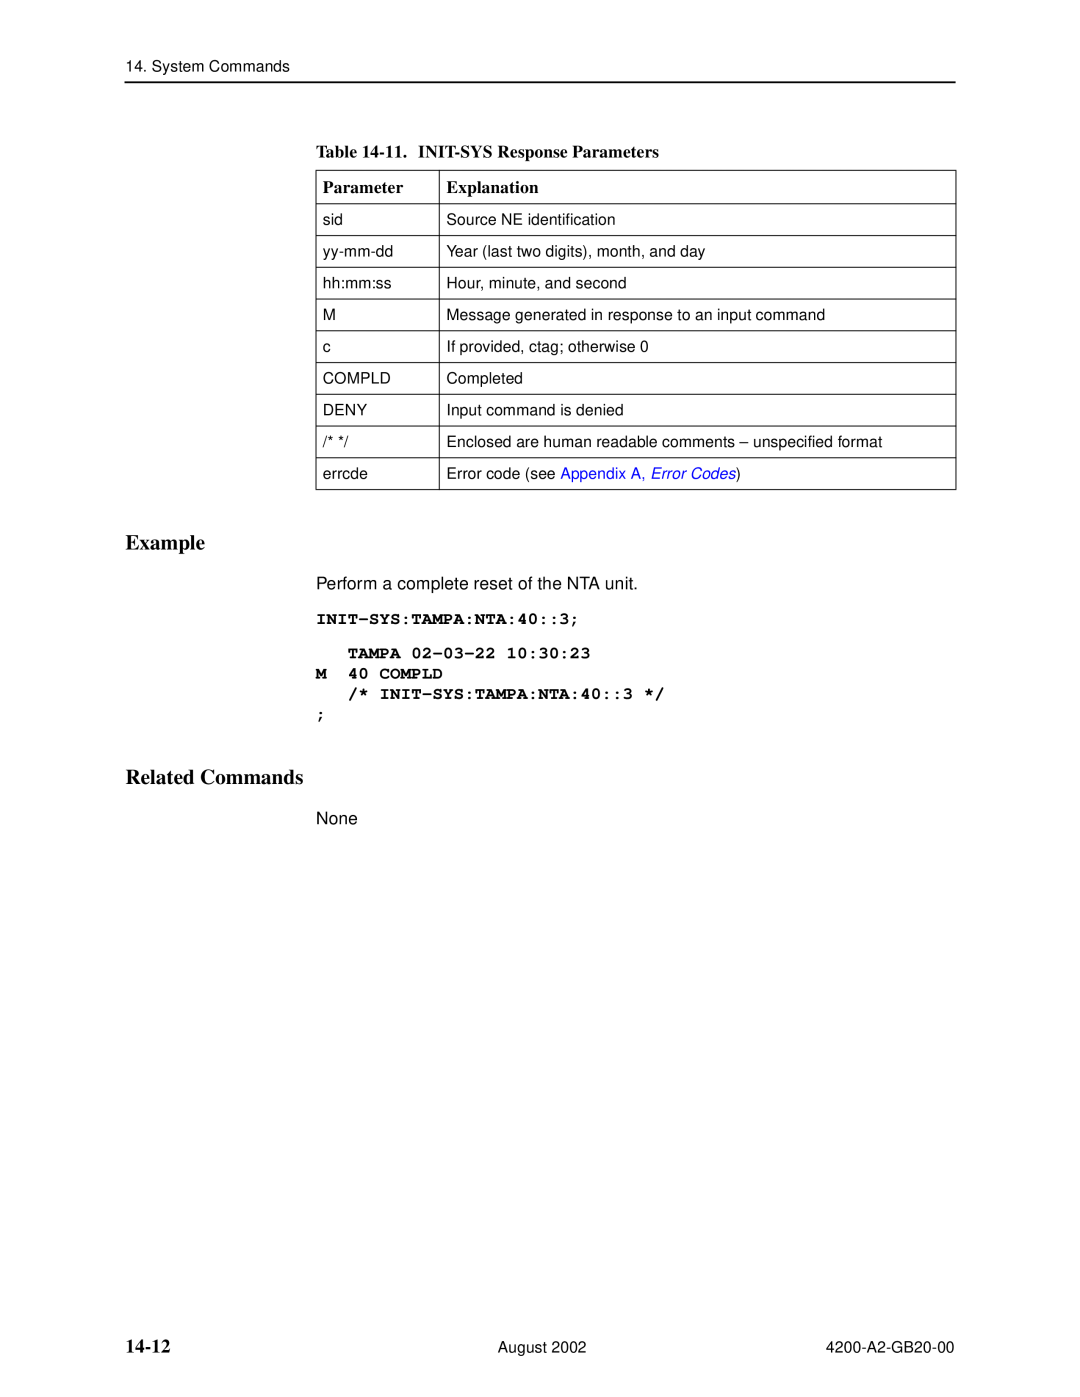 Paradyne 4200 14-12, 11. INIT-SYS Response Parameters, INIT-SYSTAMPANTA403 TAMPA 02-03-22 M 40 COMPLD INIT-SYSTAMPANTA403 